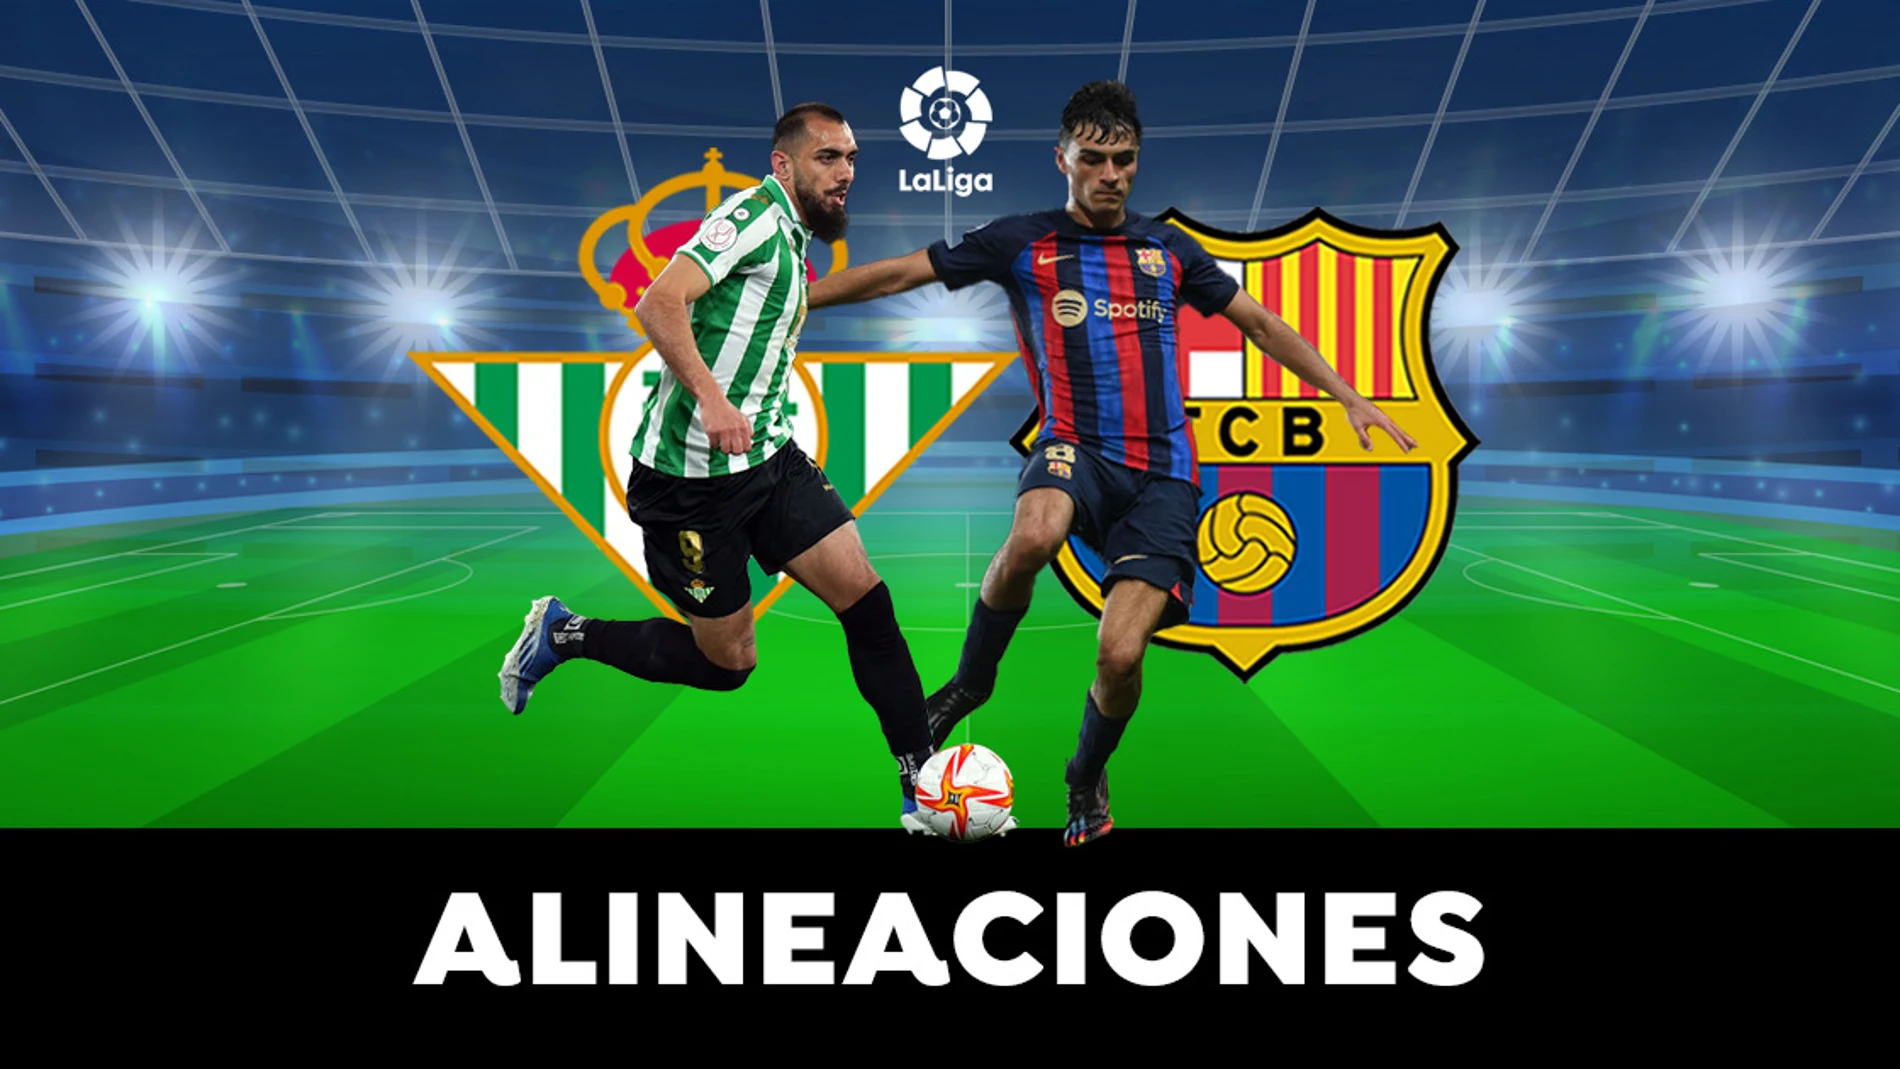 Betis - Barcelona: Alineaciones del partido de LaLiga